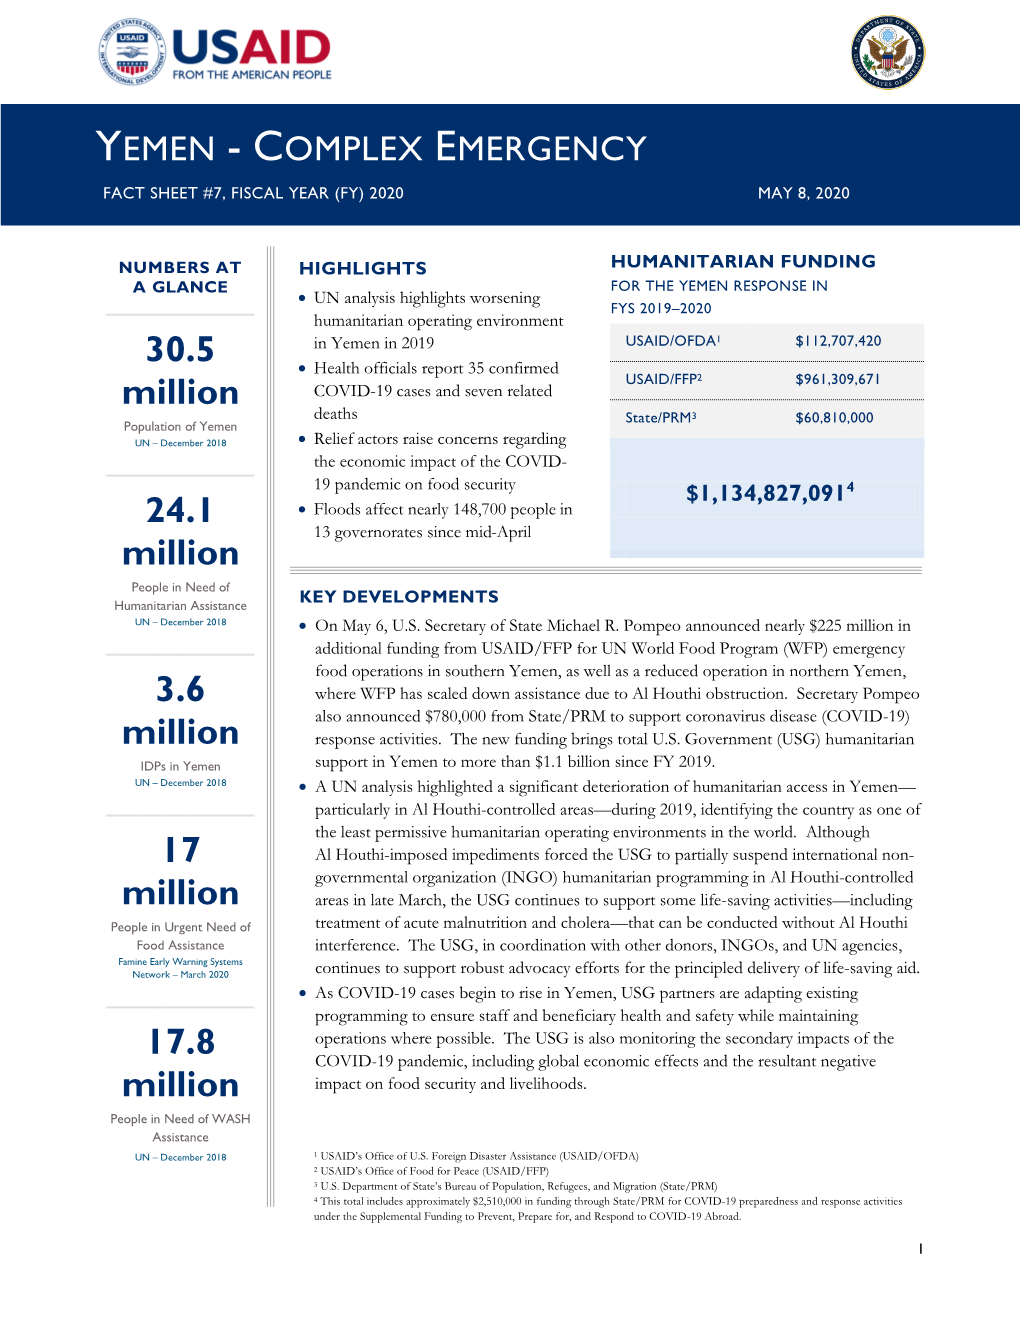 USG Yemen Complex Emergency Fact Sheet #7